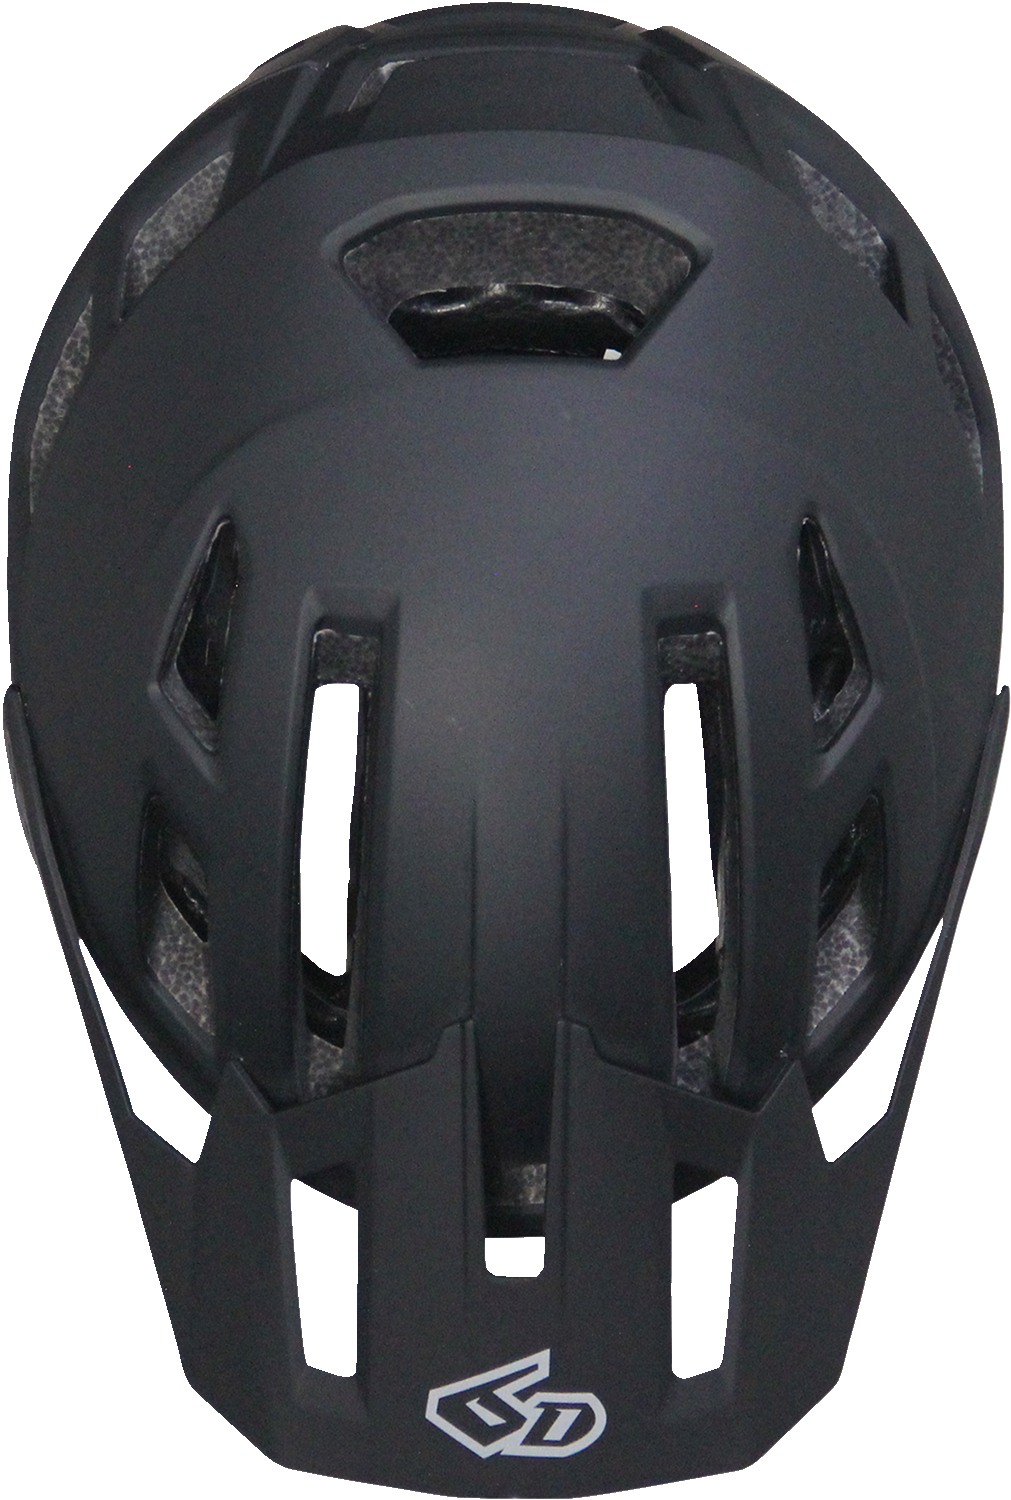 6D ATB-2T Helmet - Ascent - Black Matte - XS/S 23-0004